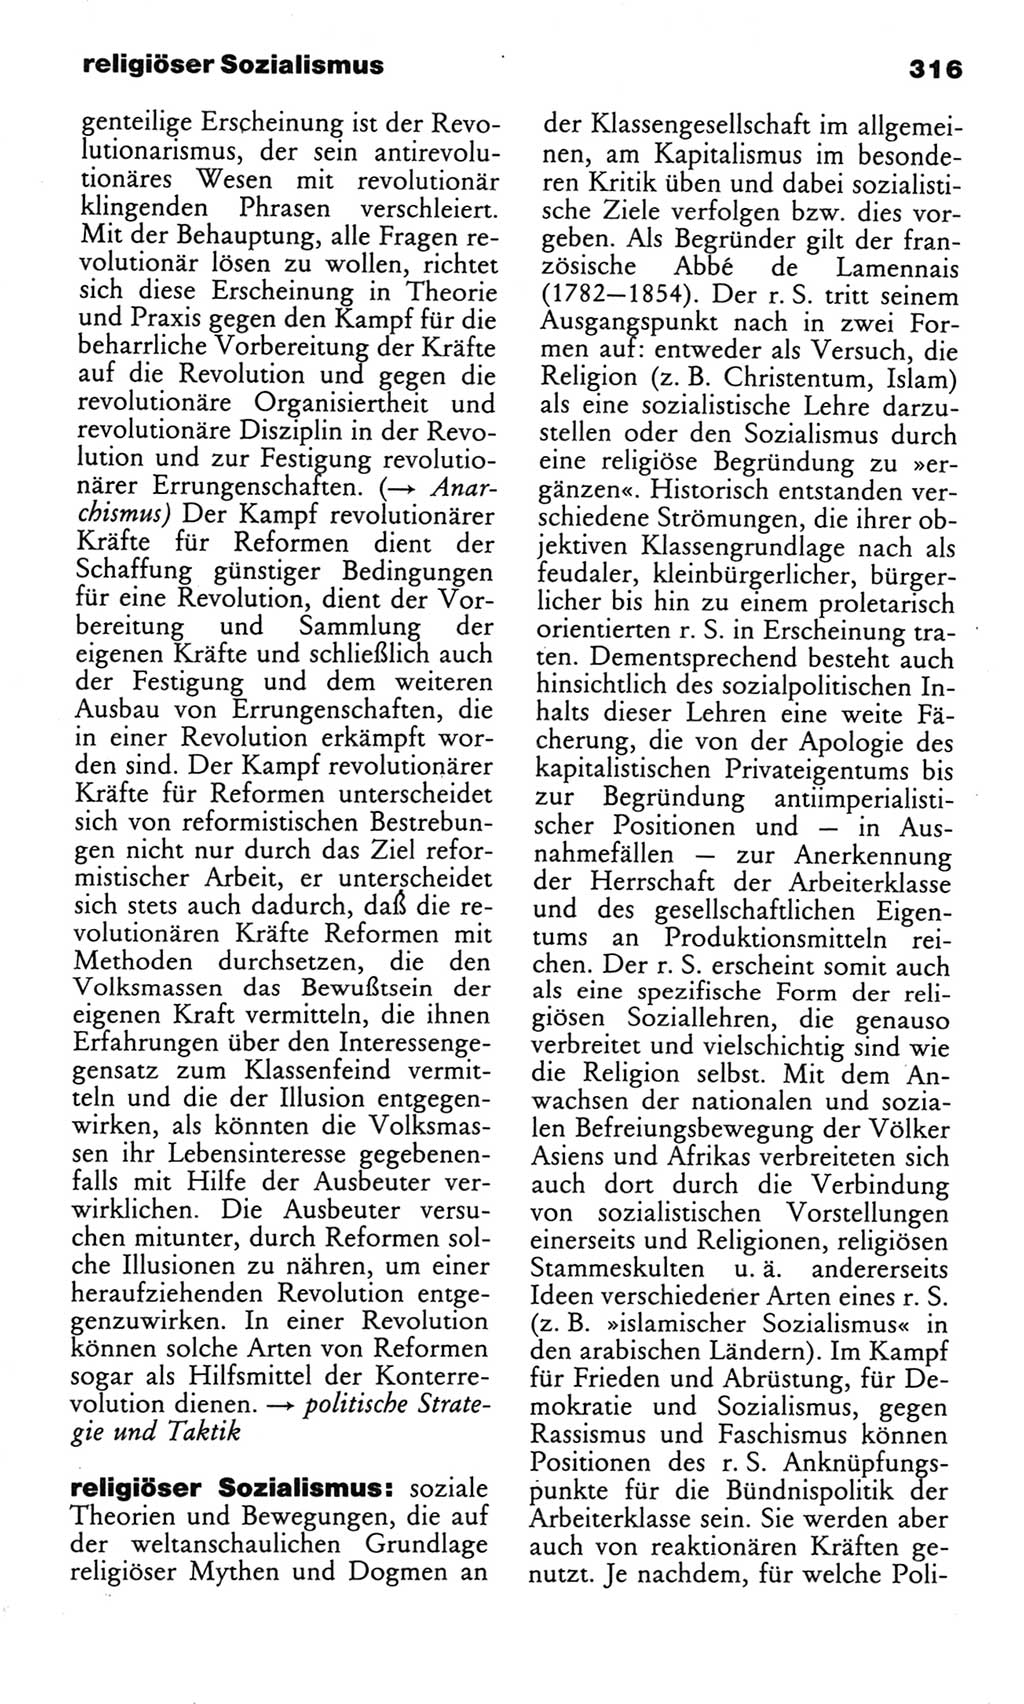 Wörterbuch des wissenschaftlichen Kommunismus [Deutsche Demokratische Republik (DDR)] 1982, Seite 316 (Wb. wiss. Komm. DDR 1982, S. 316)